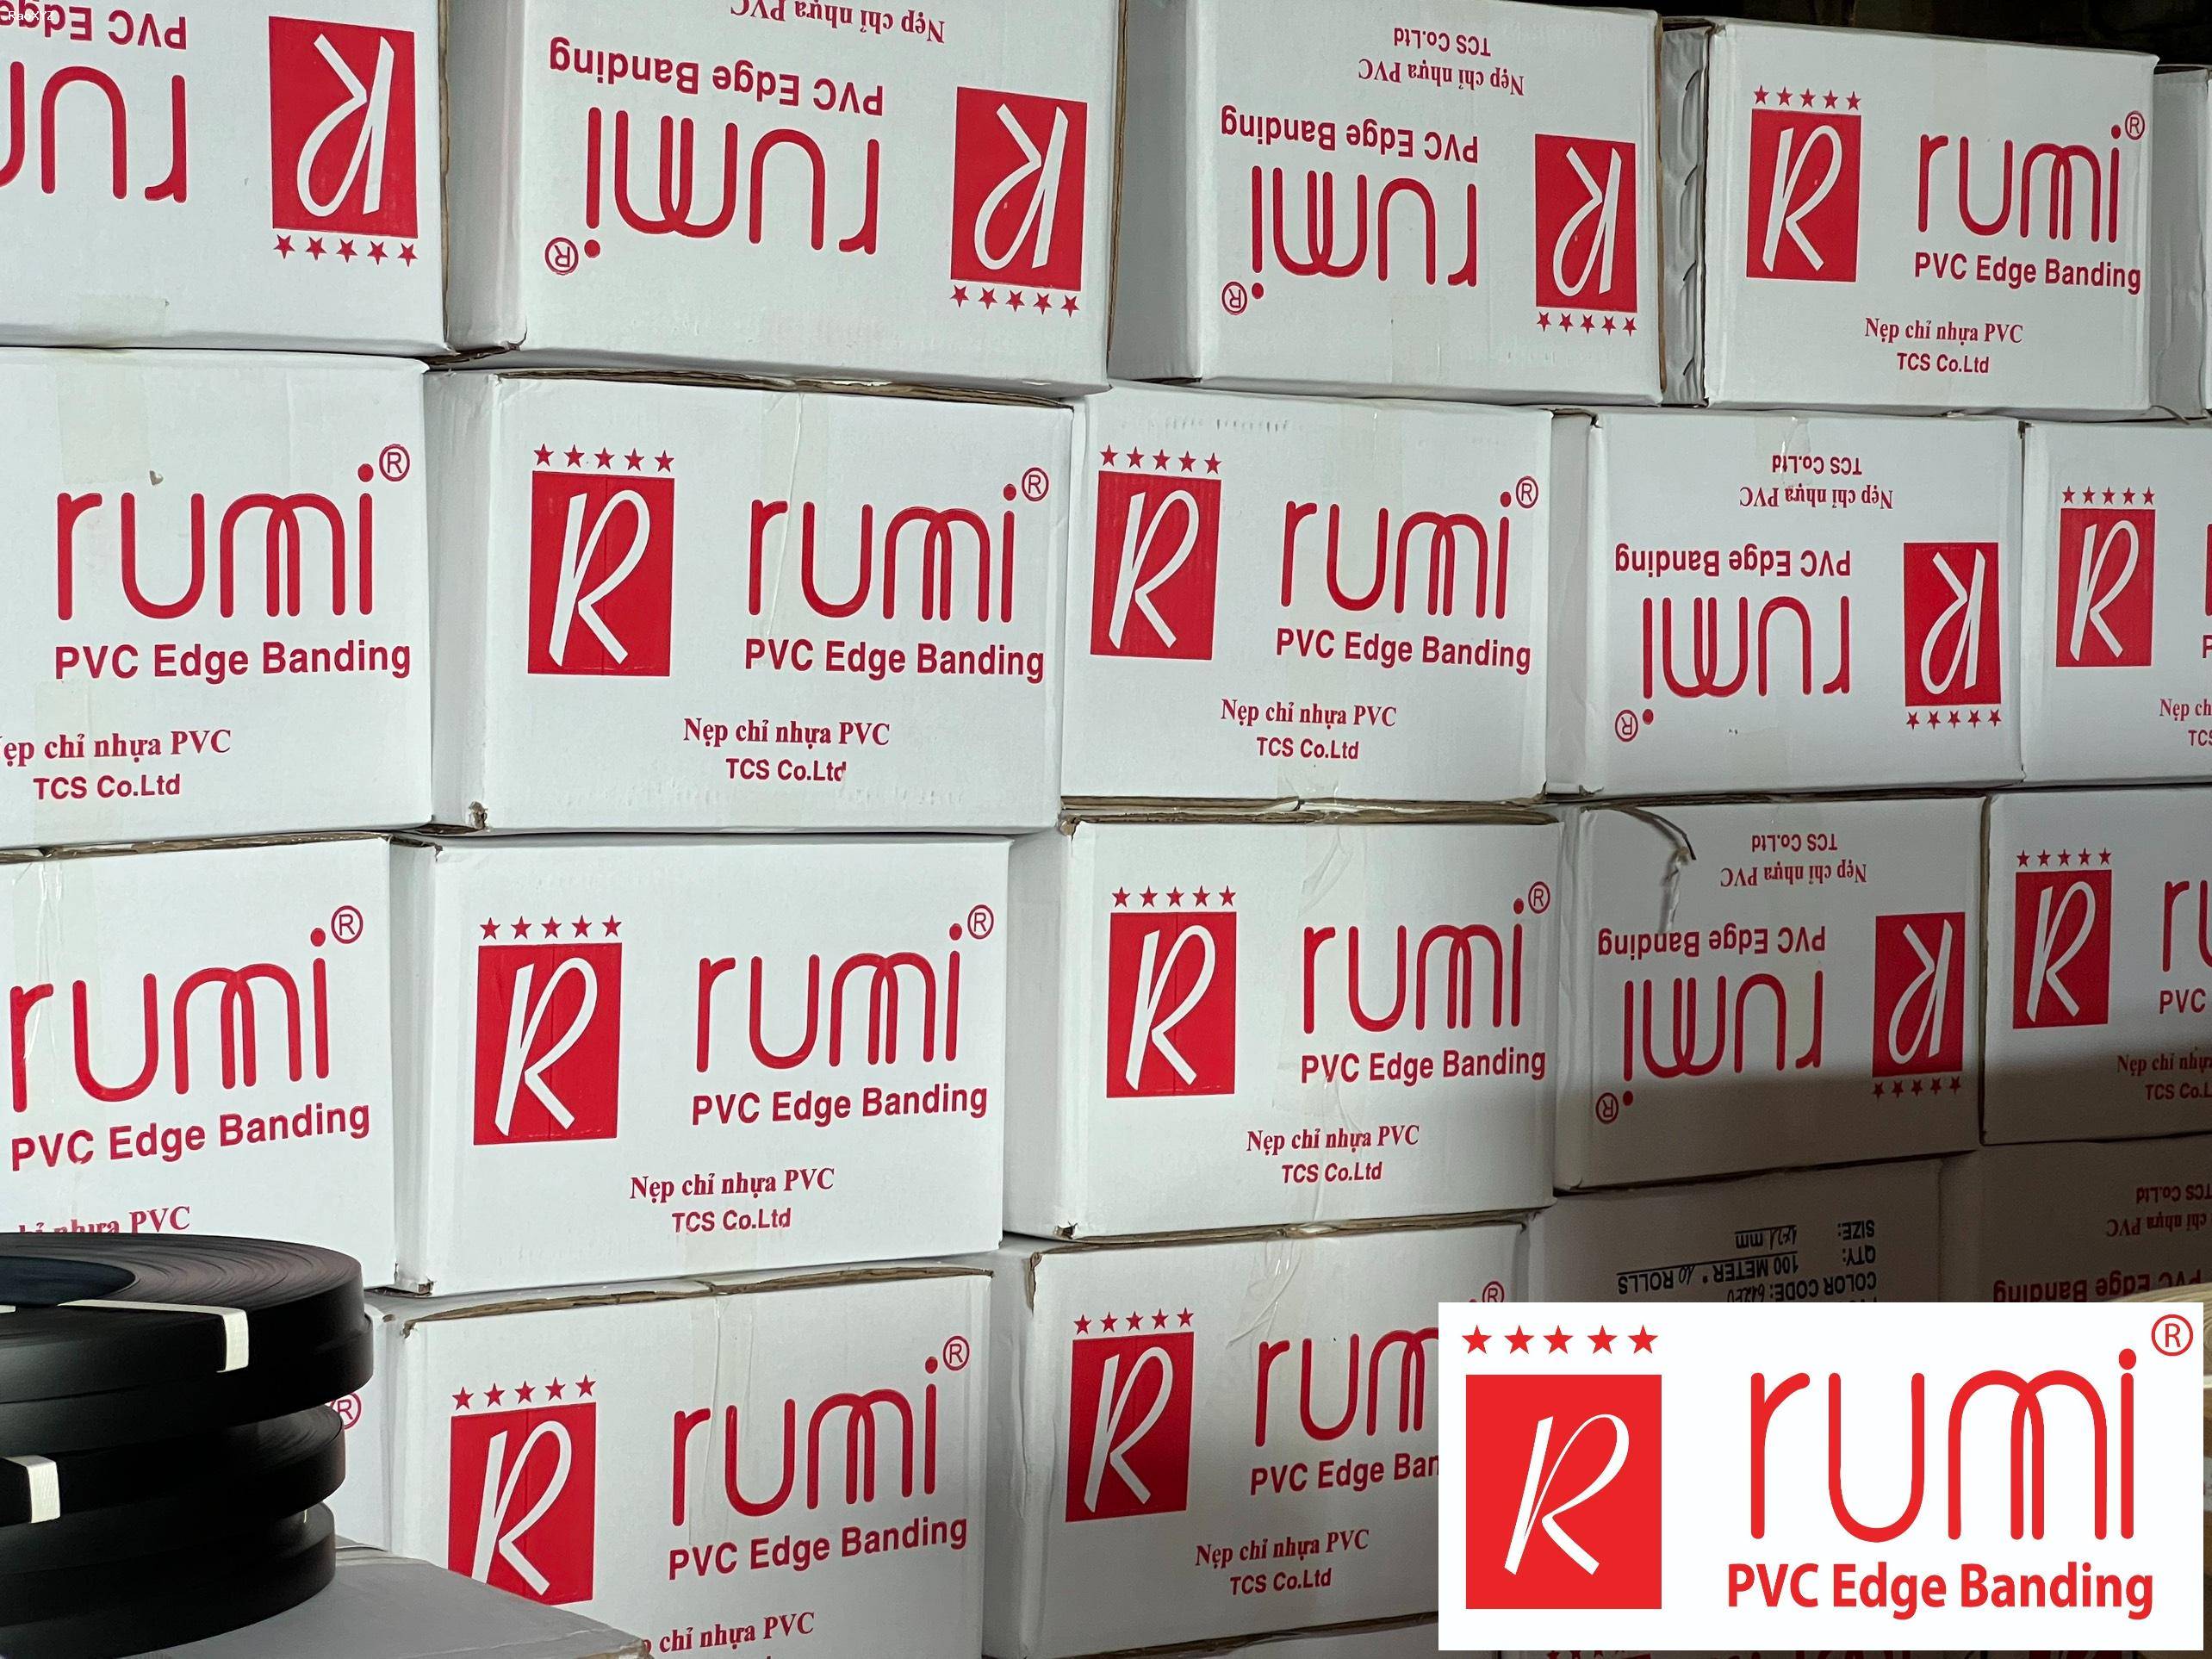 Nẹp chỉ nhựa PVC Rumi: Chất lượng cao